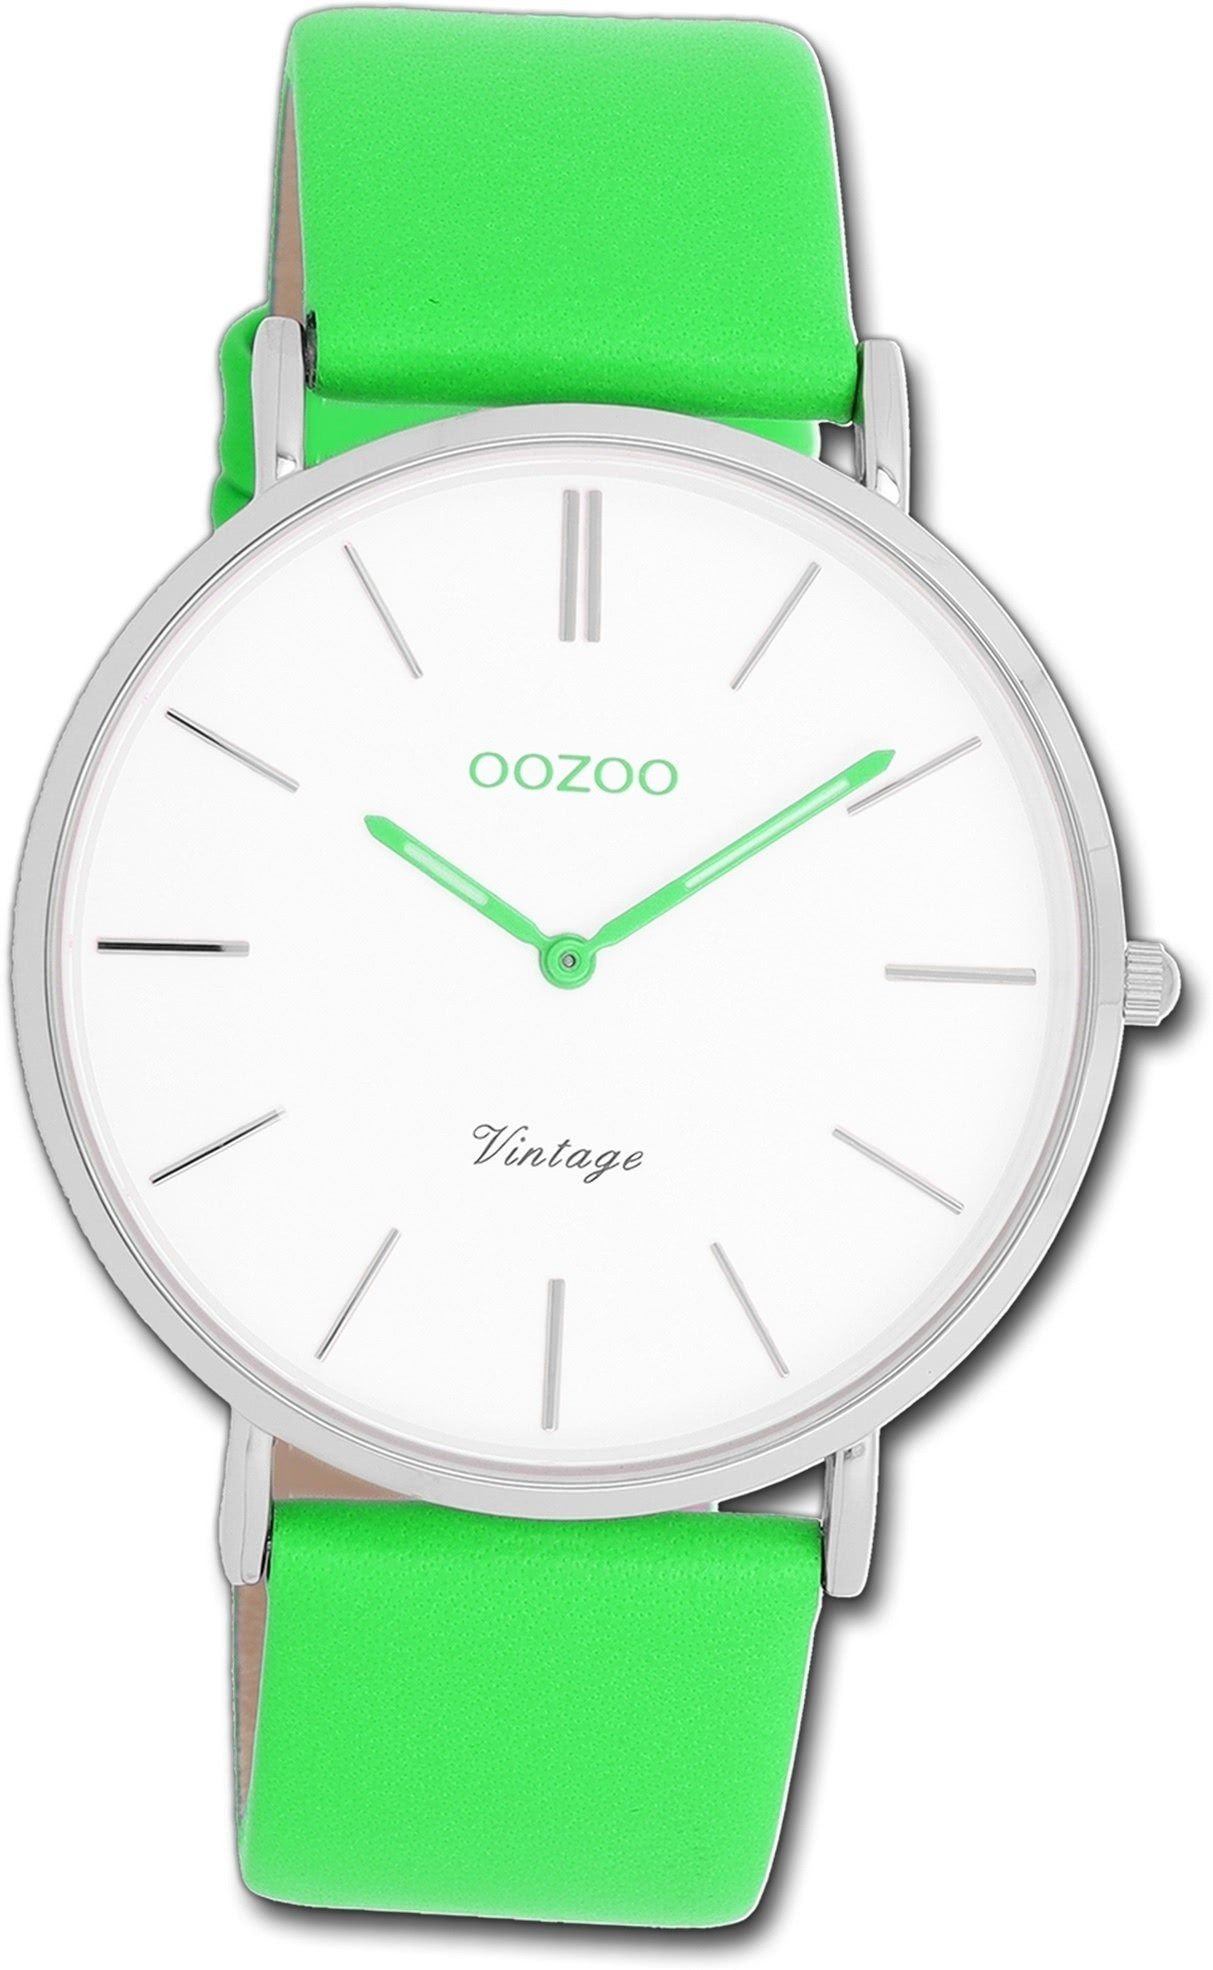 OOZOO Quarzuhr Oozoo Damen Armbanduhr Vintage grün, Damenuhr Lederarmband grün, rundes Gehäuse, groß (ca. 40mm)